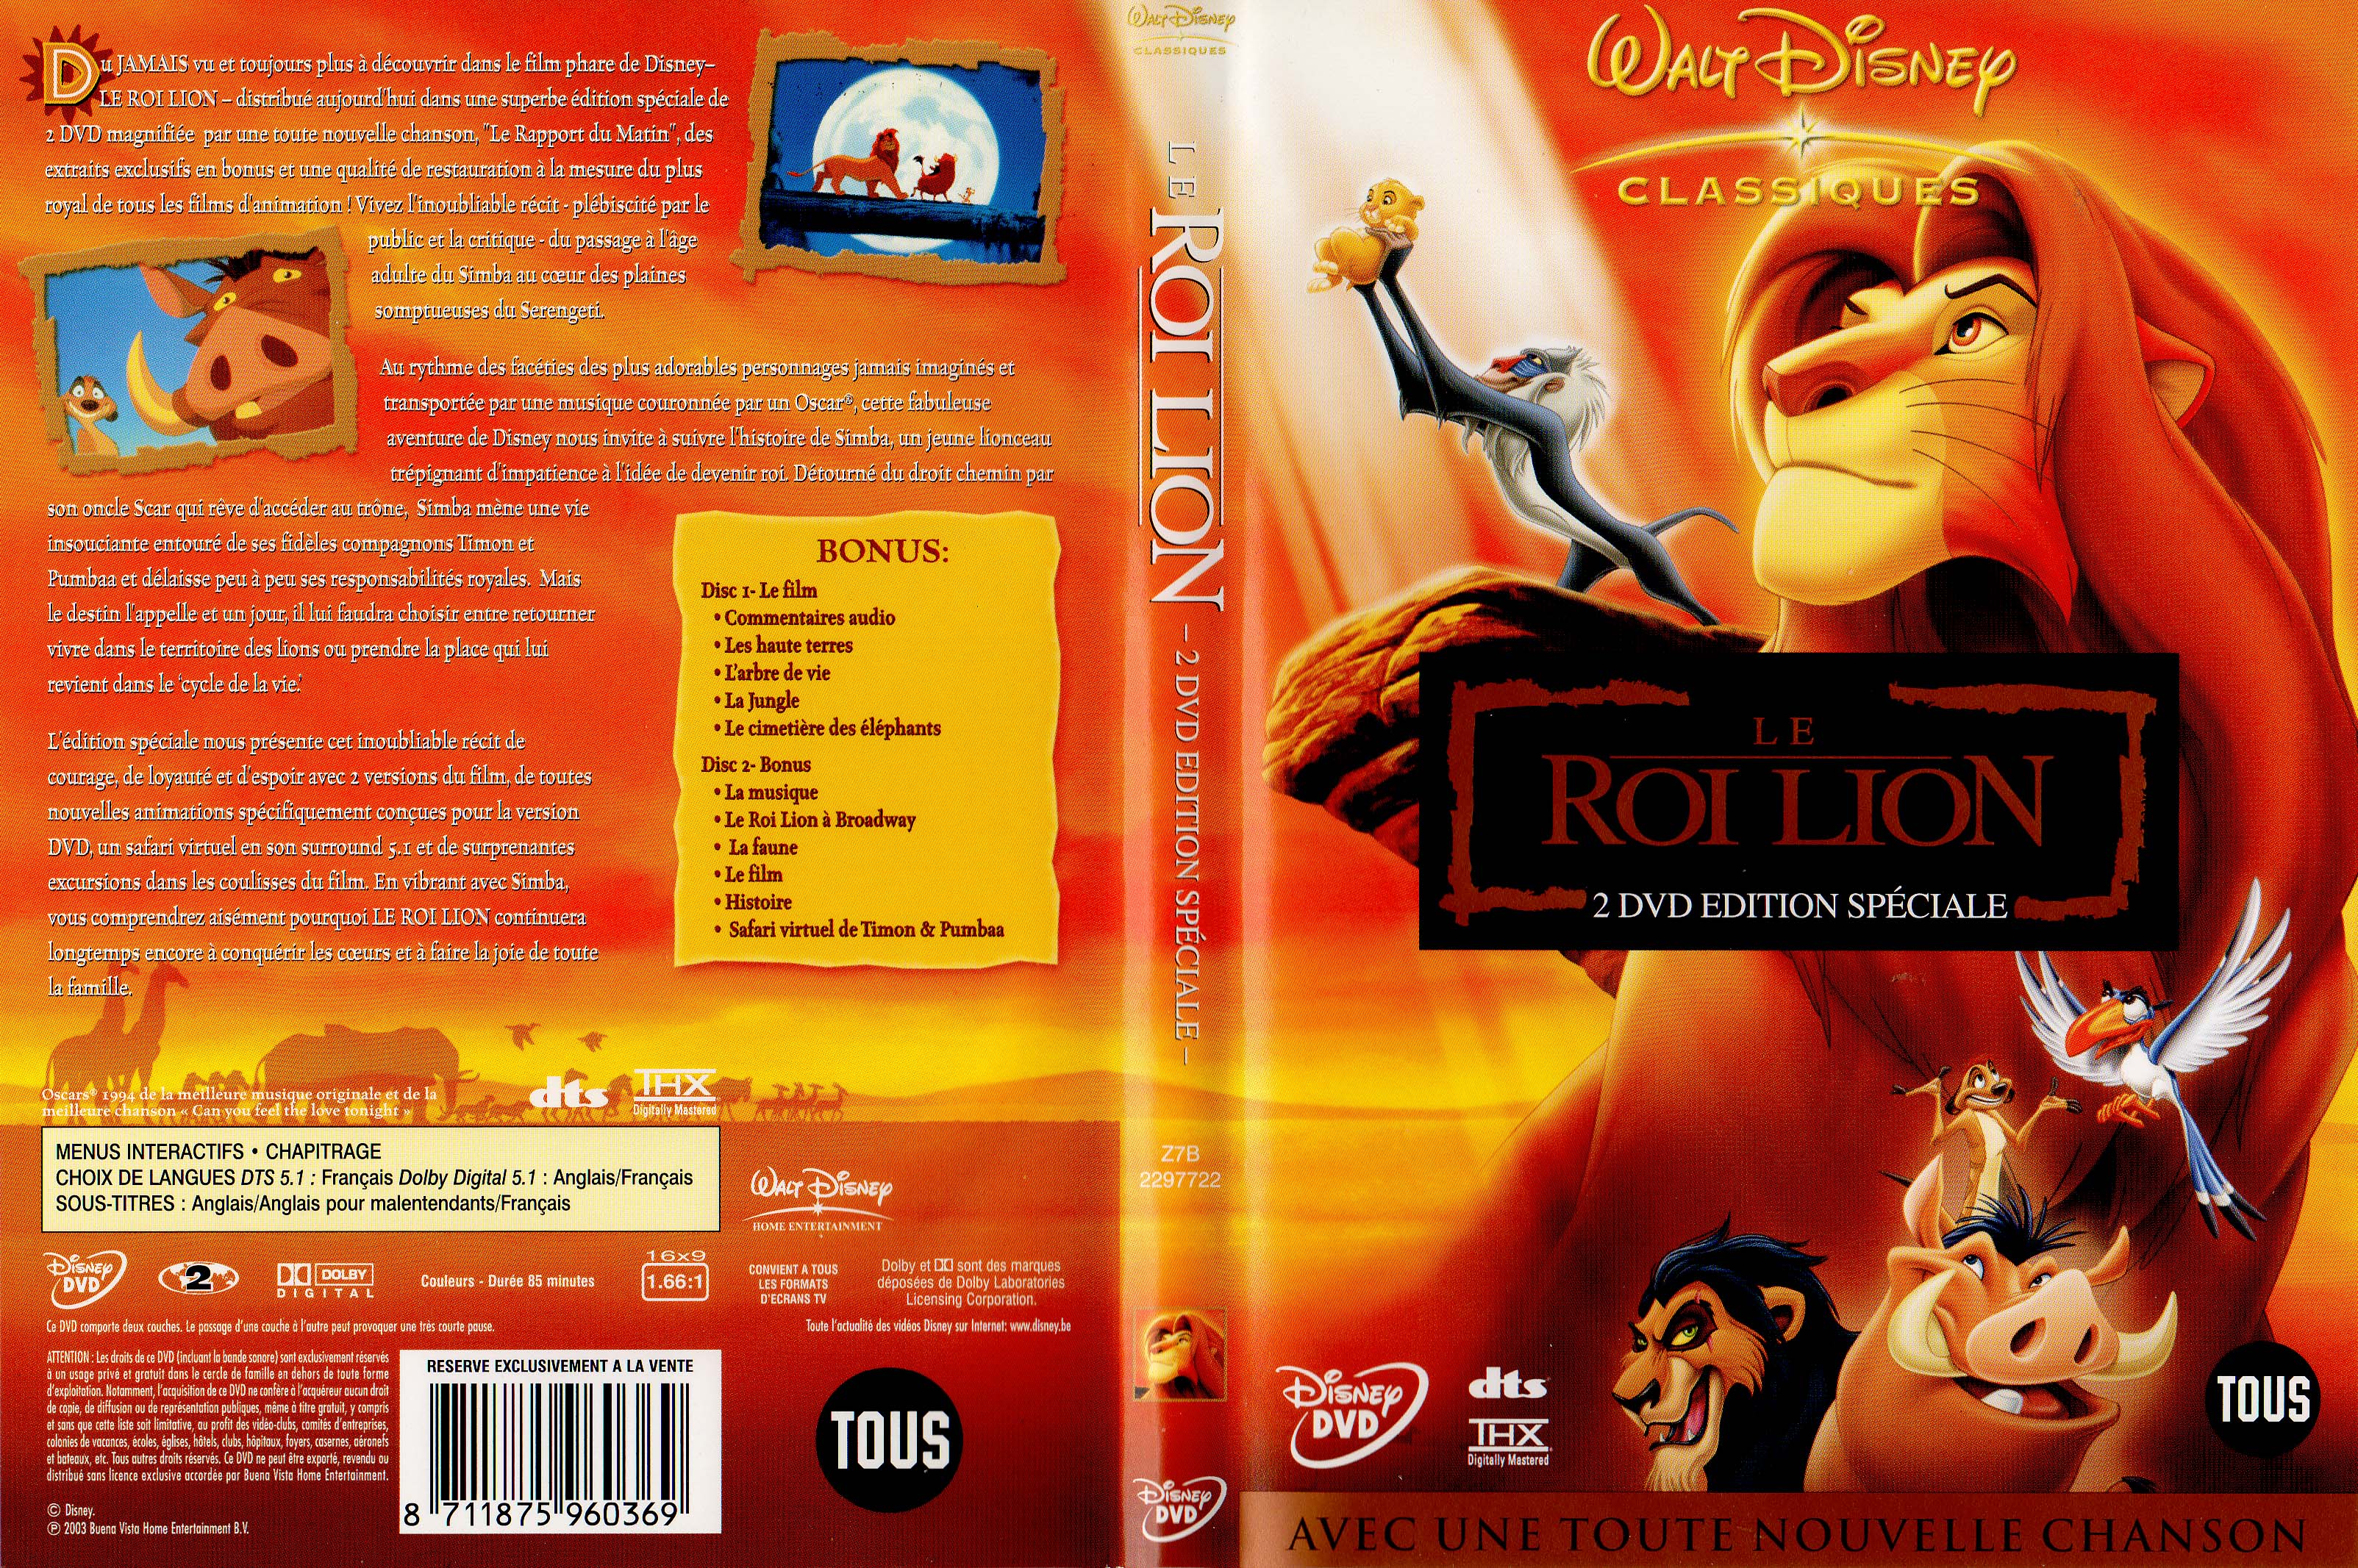 Jaquette DVD Le roi lion v3